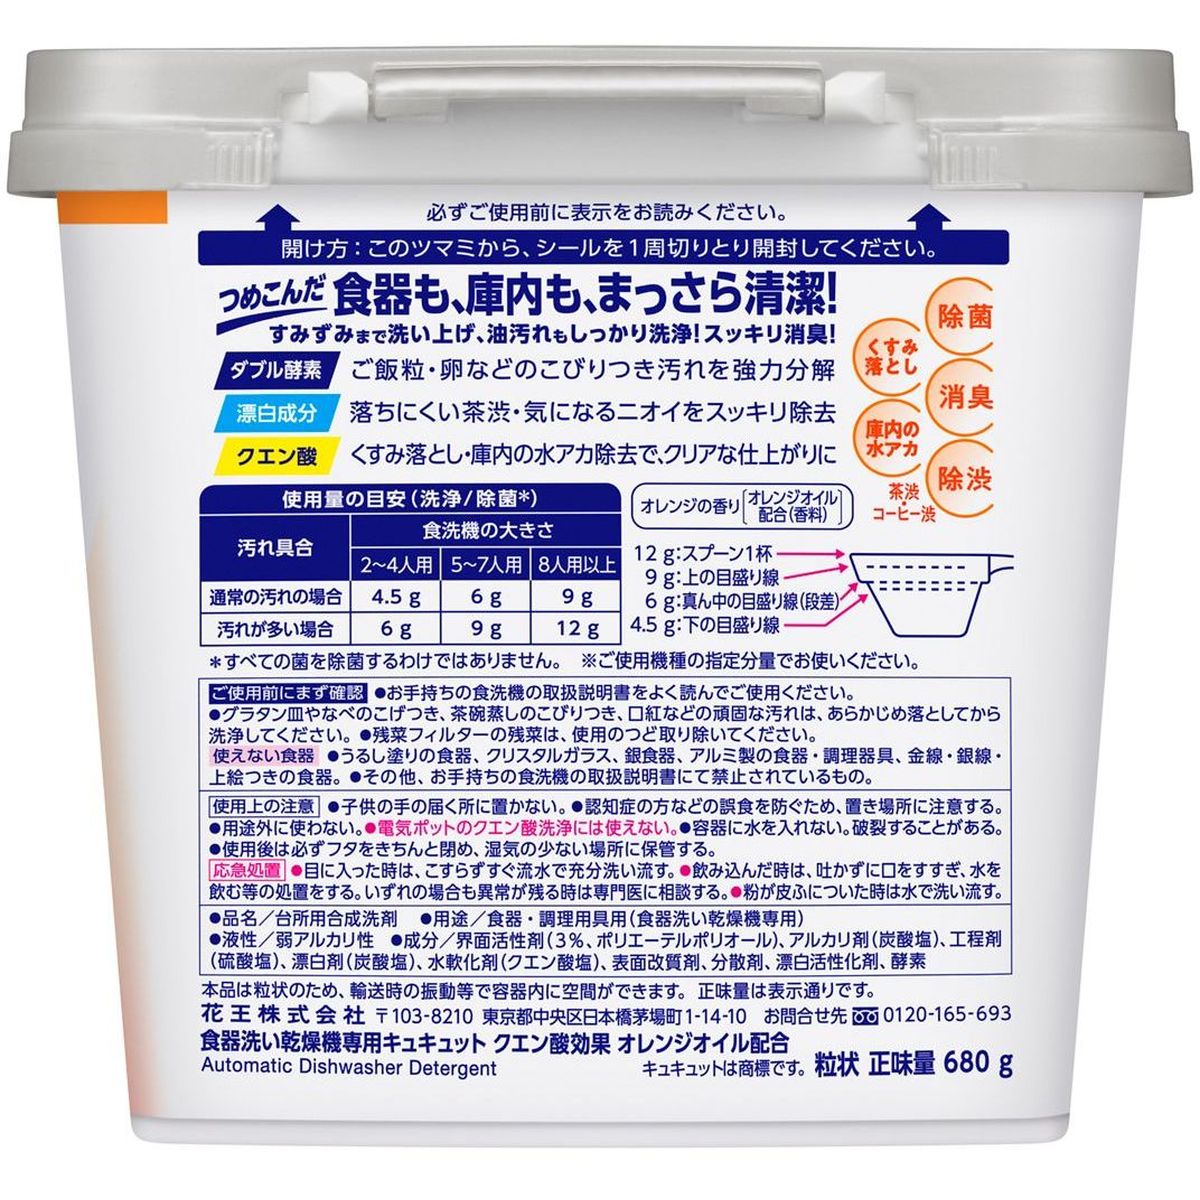 食器洗い乾燥機専用 キュキュットクエン酸効果 オレンジオイル配合 本体 680g×12個